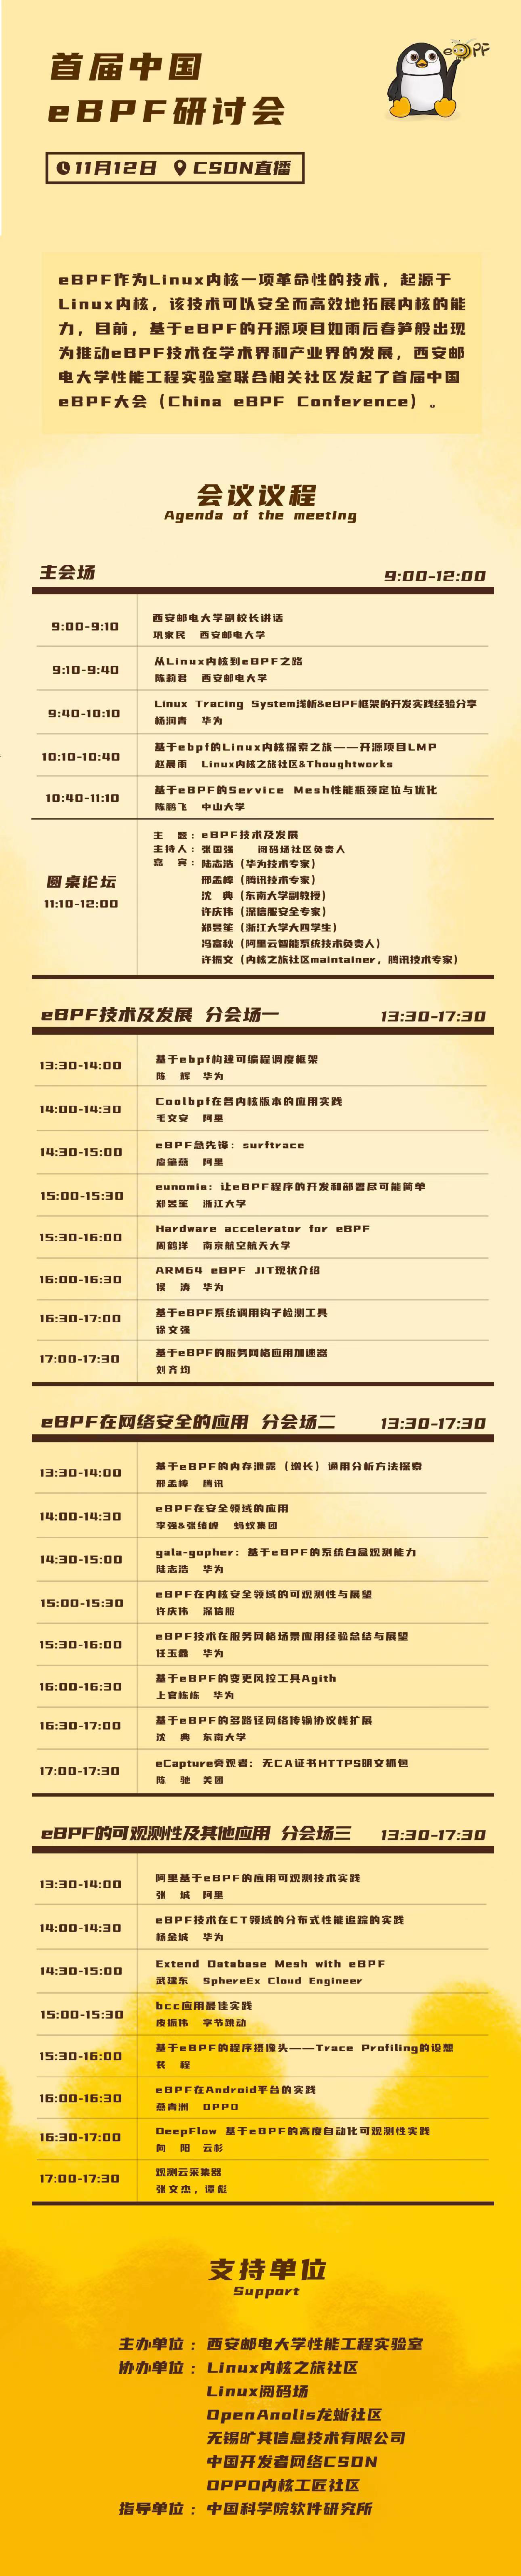 首届中国eBPF大会明天准时与大家见面，龙蜥多位技术专家参与演讲-开源基础软件社区